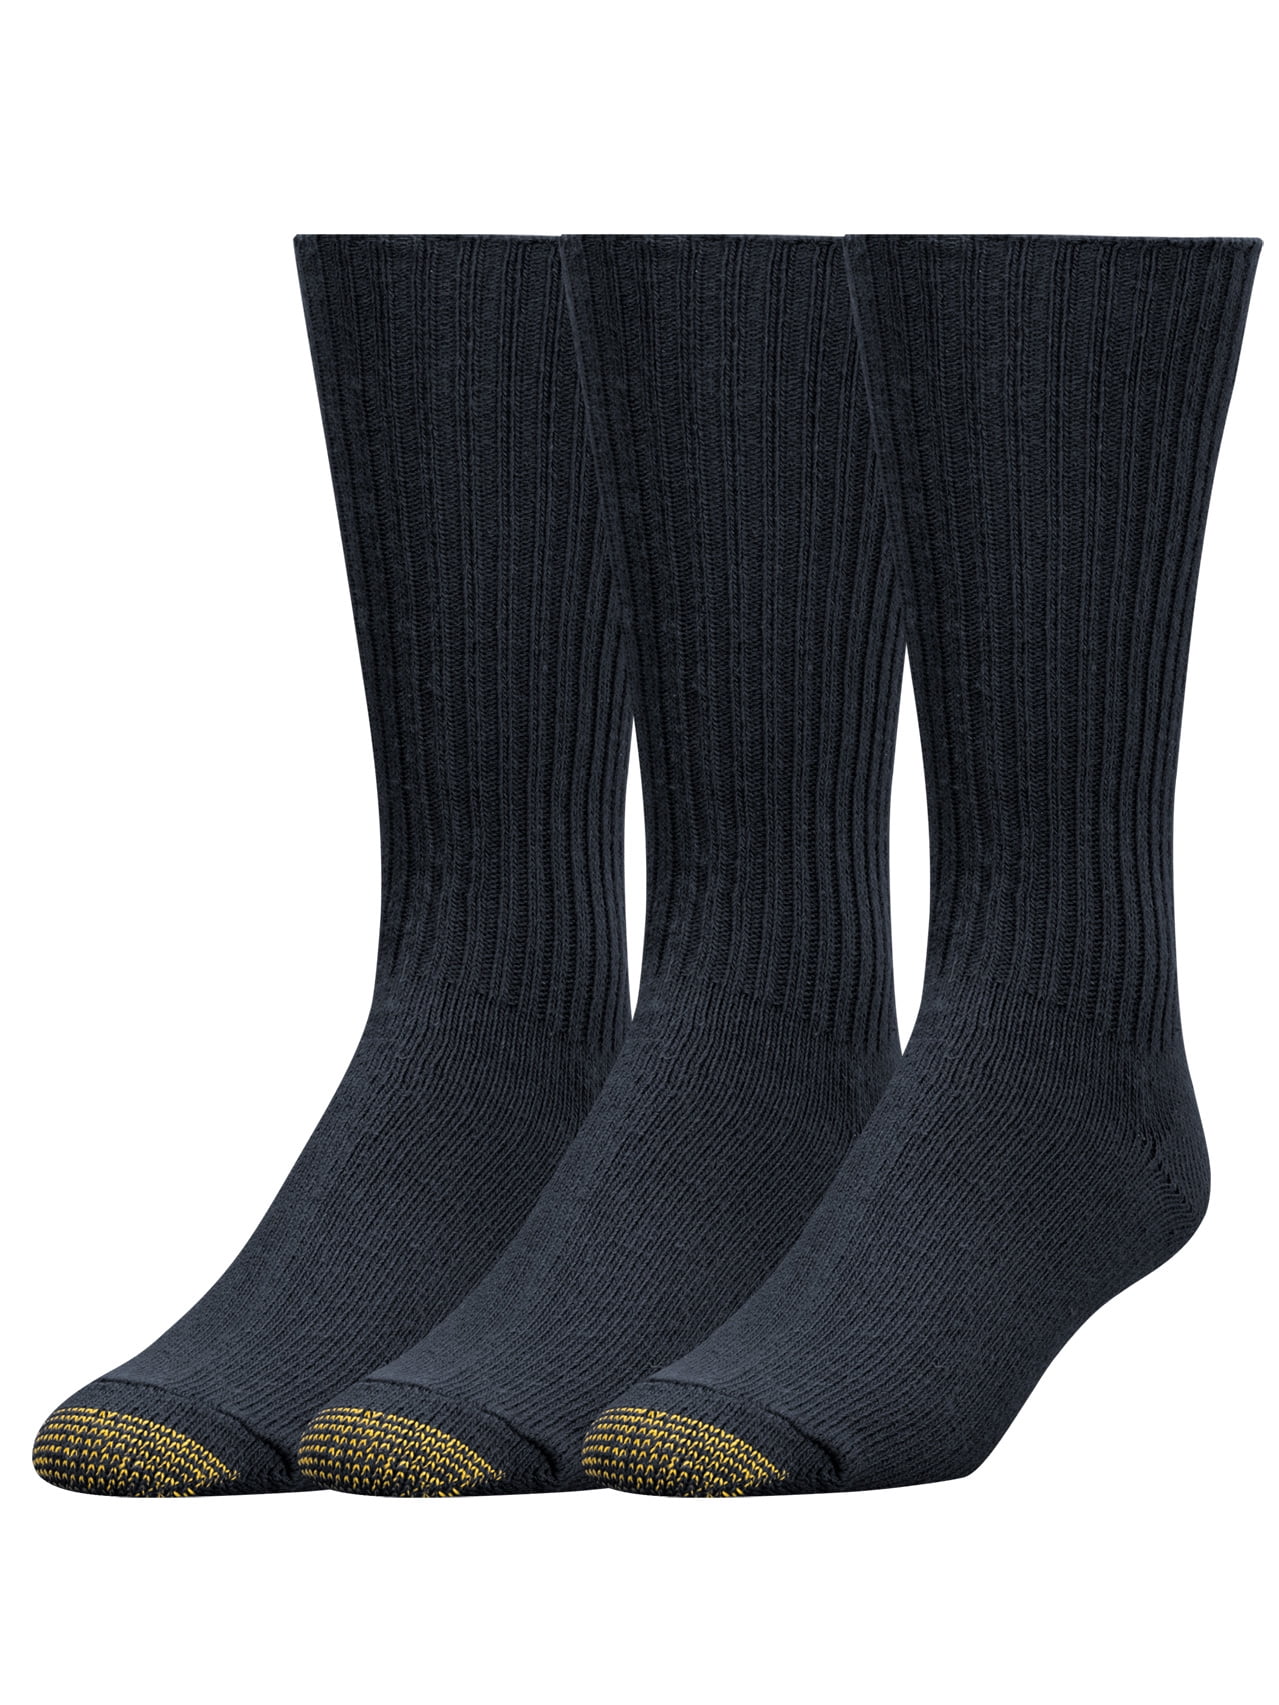 12 PAIRS 4 PK , Black Gold Toe Mens Fluffies Casual Sock